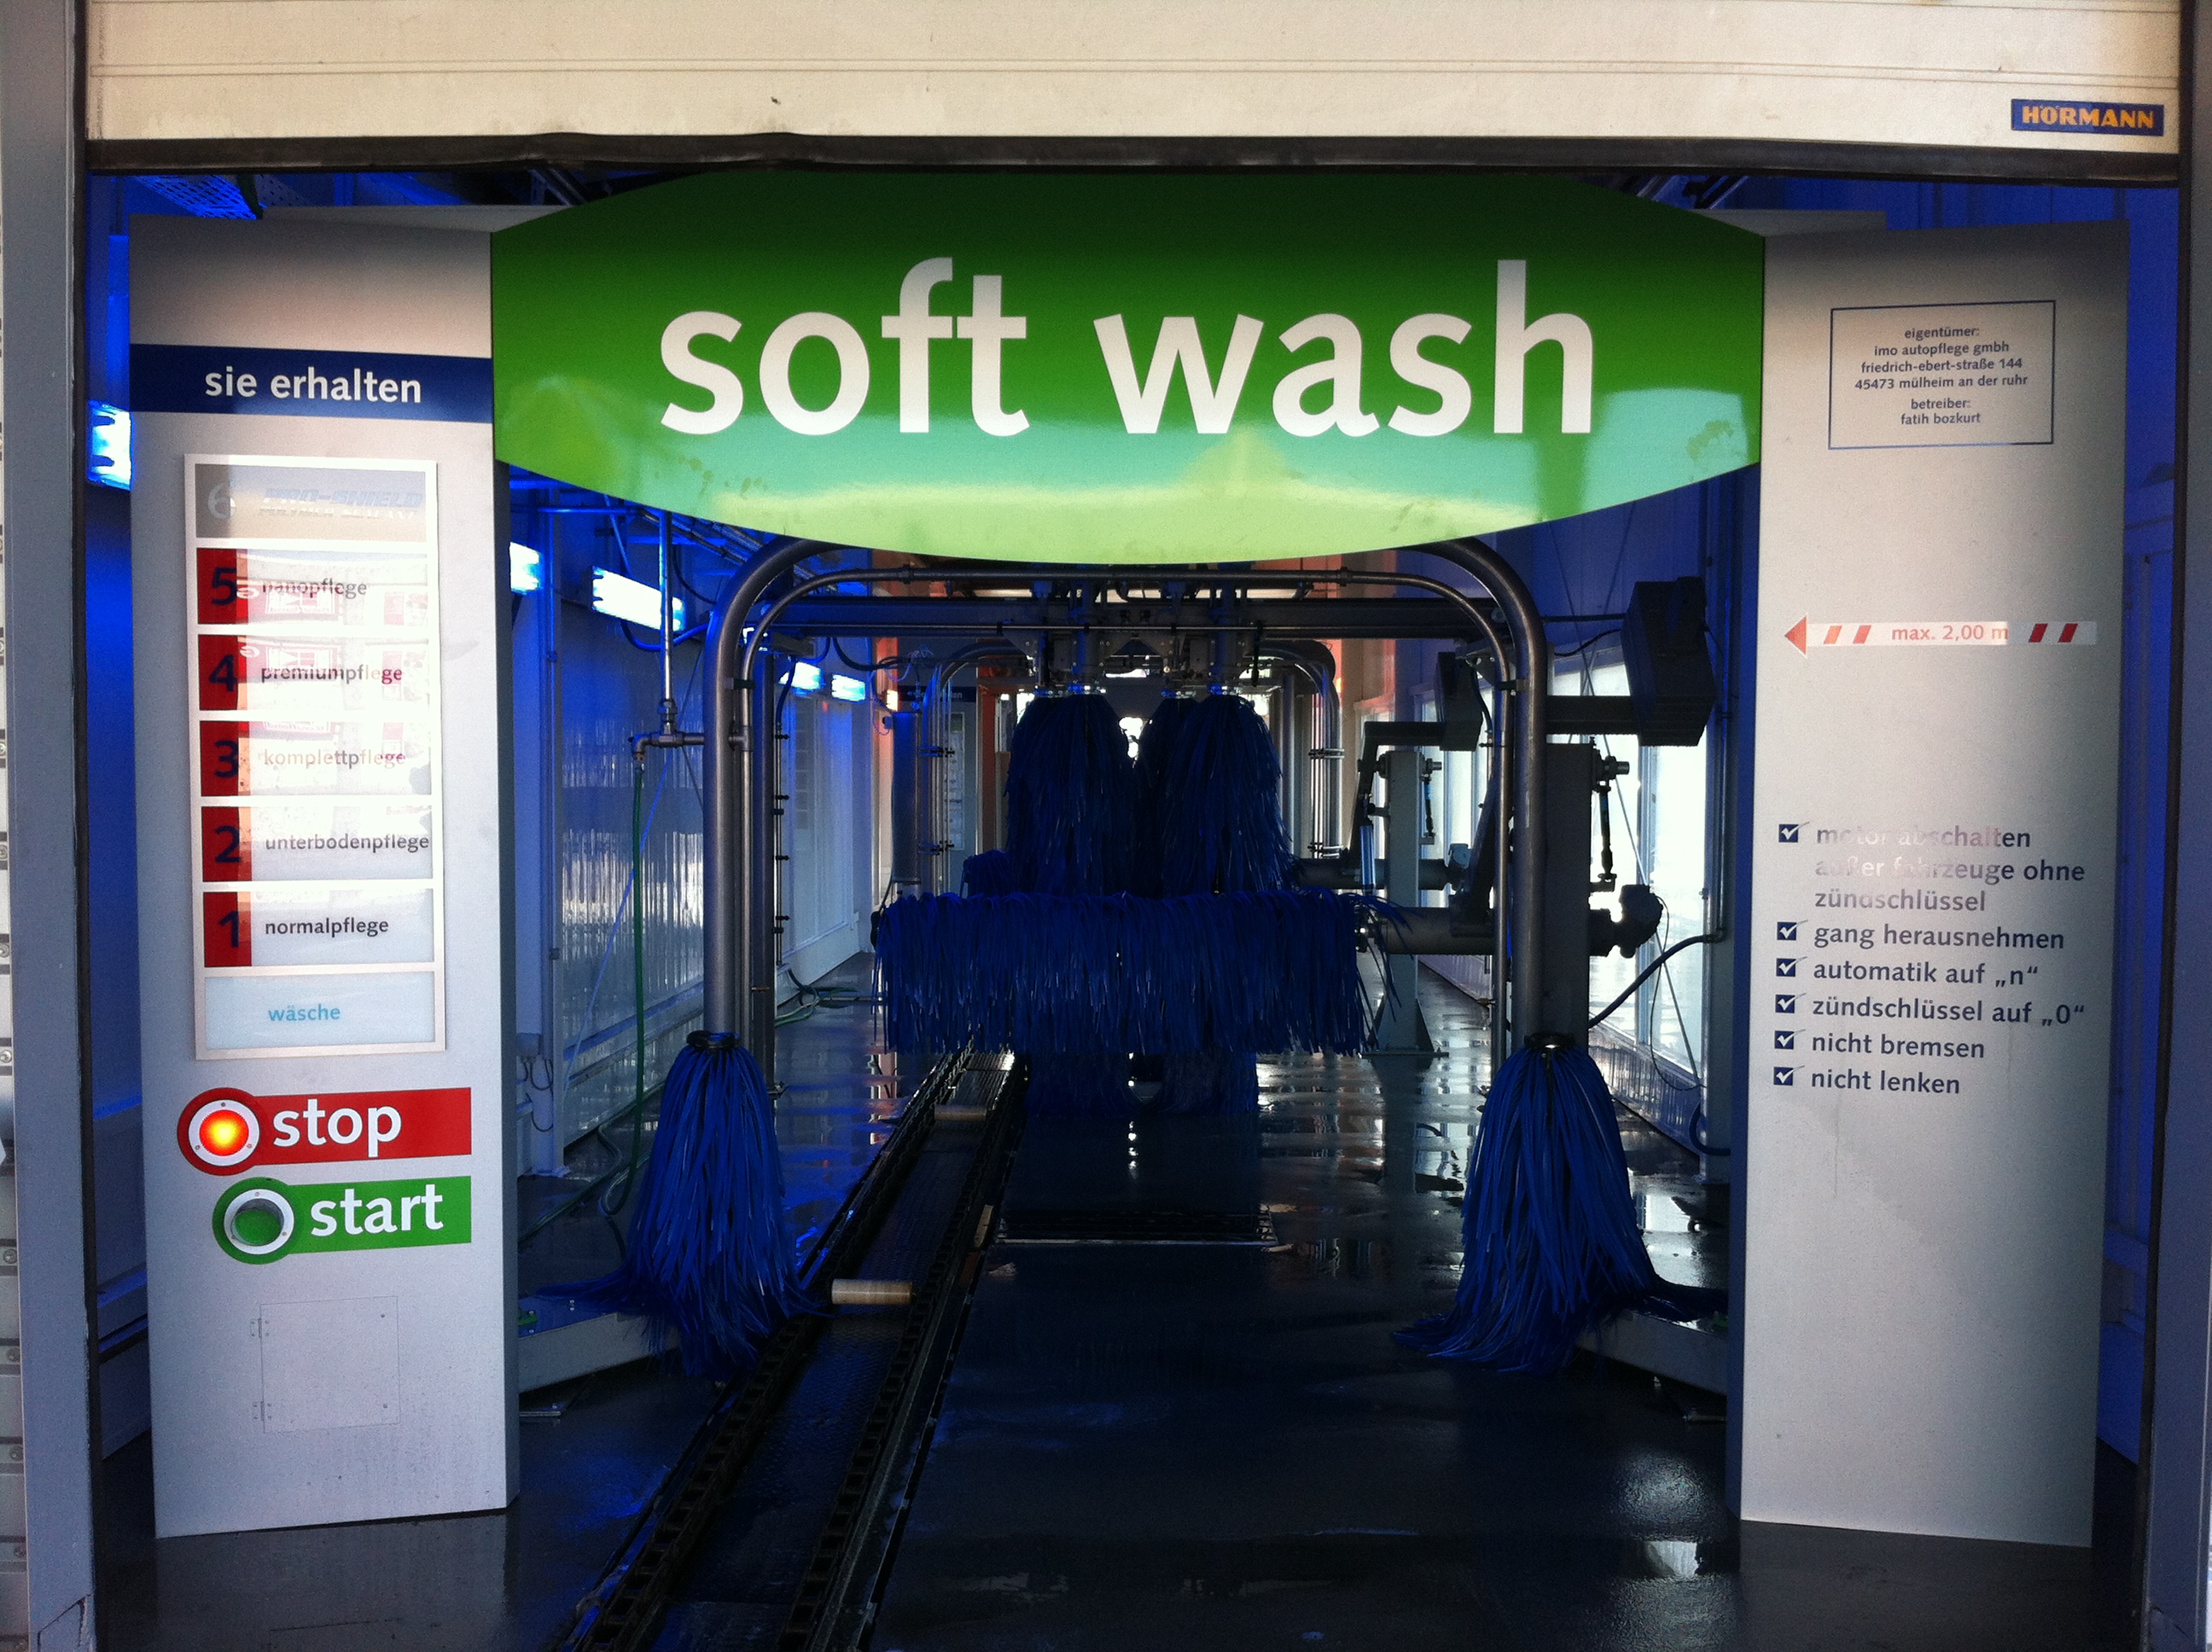 IMO Car Wash, Senefelder Str. 4 in Braunschweig